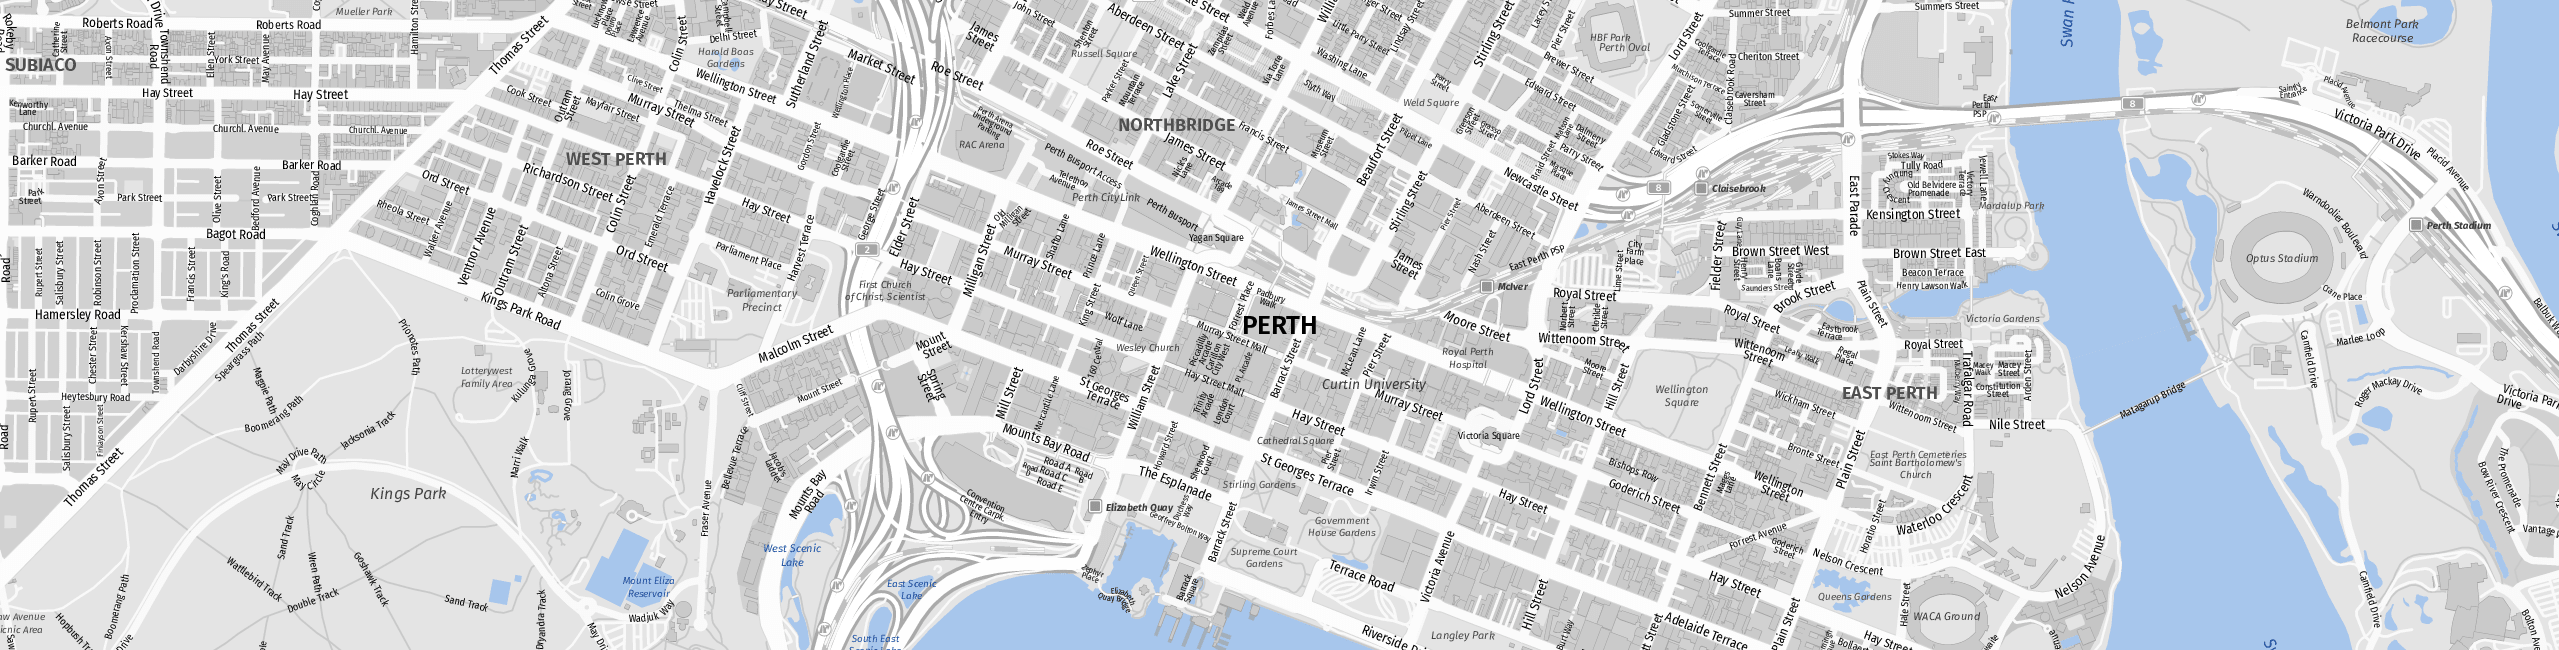 Stadtplan Perth zum Downloaden.